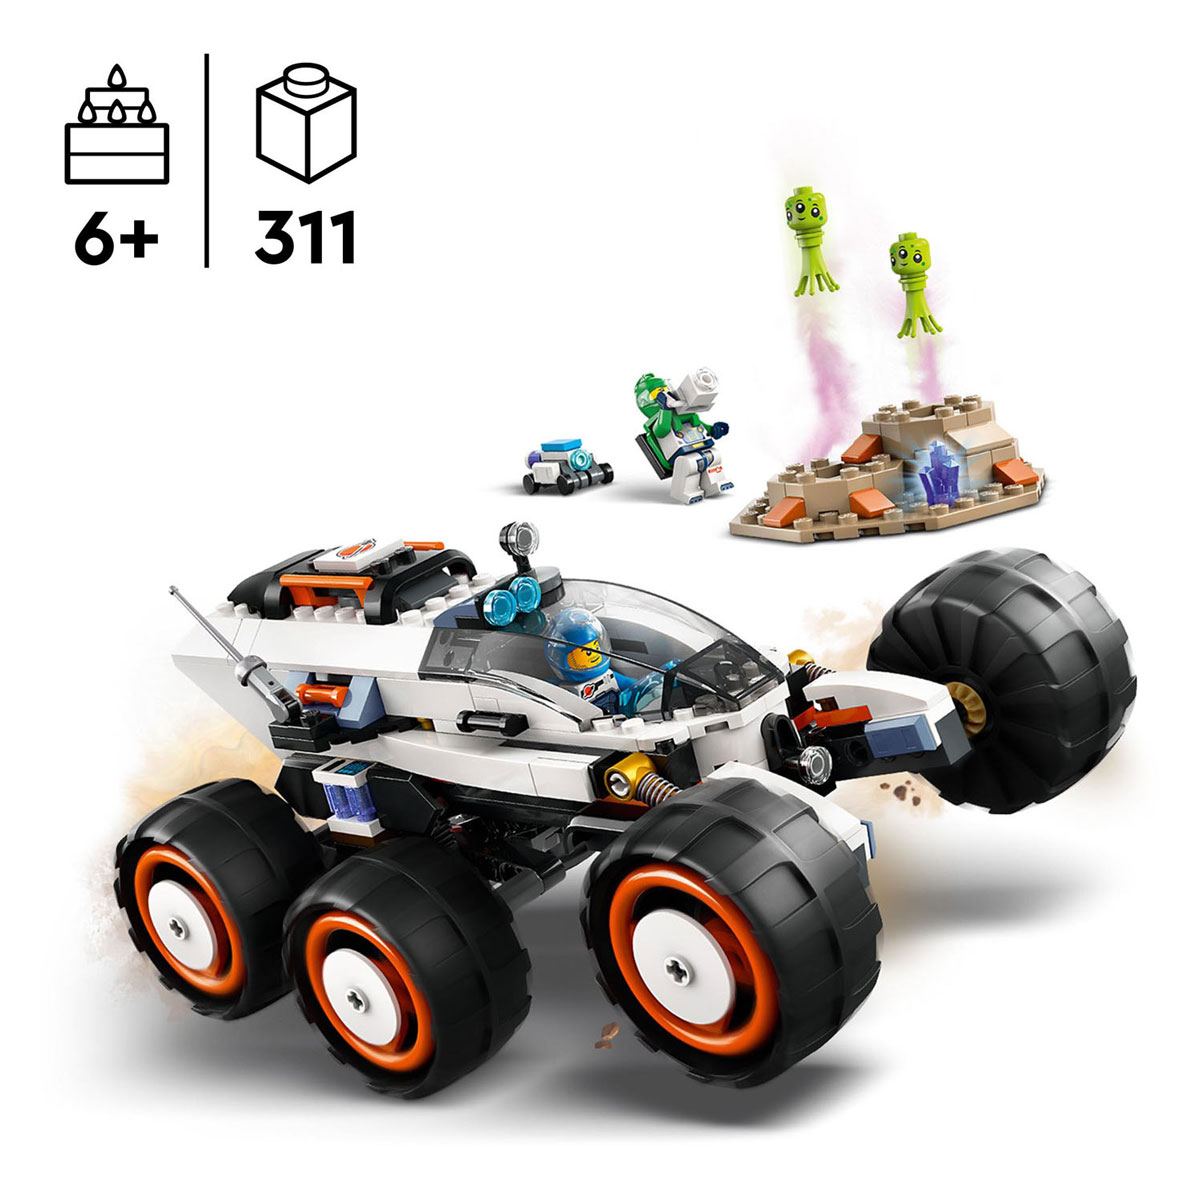 LEGO City 60431 Weltraumforscher und außerirdisches Leben